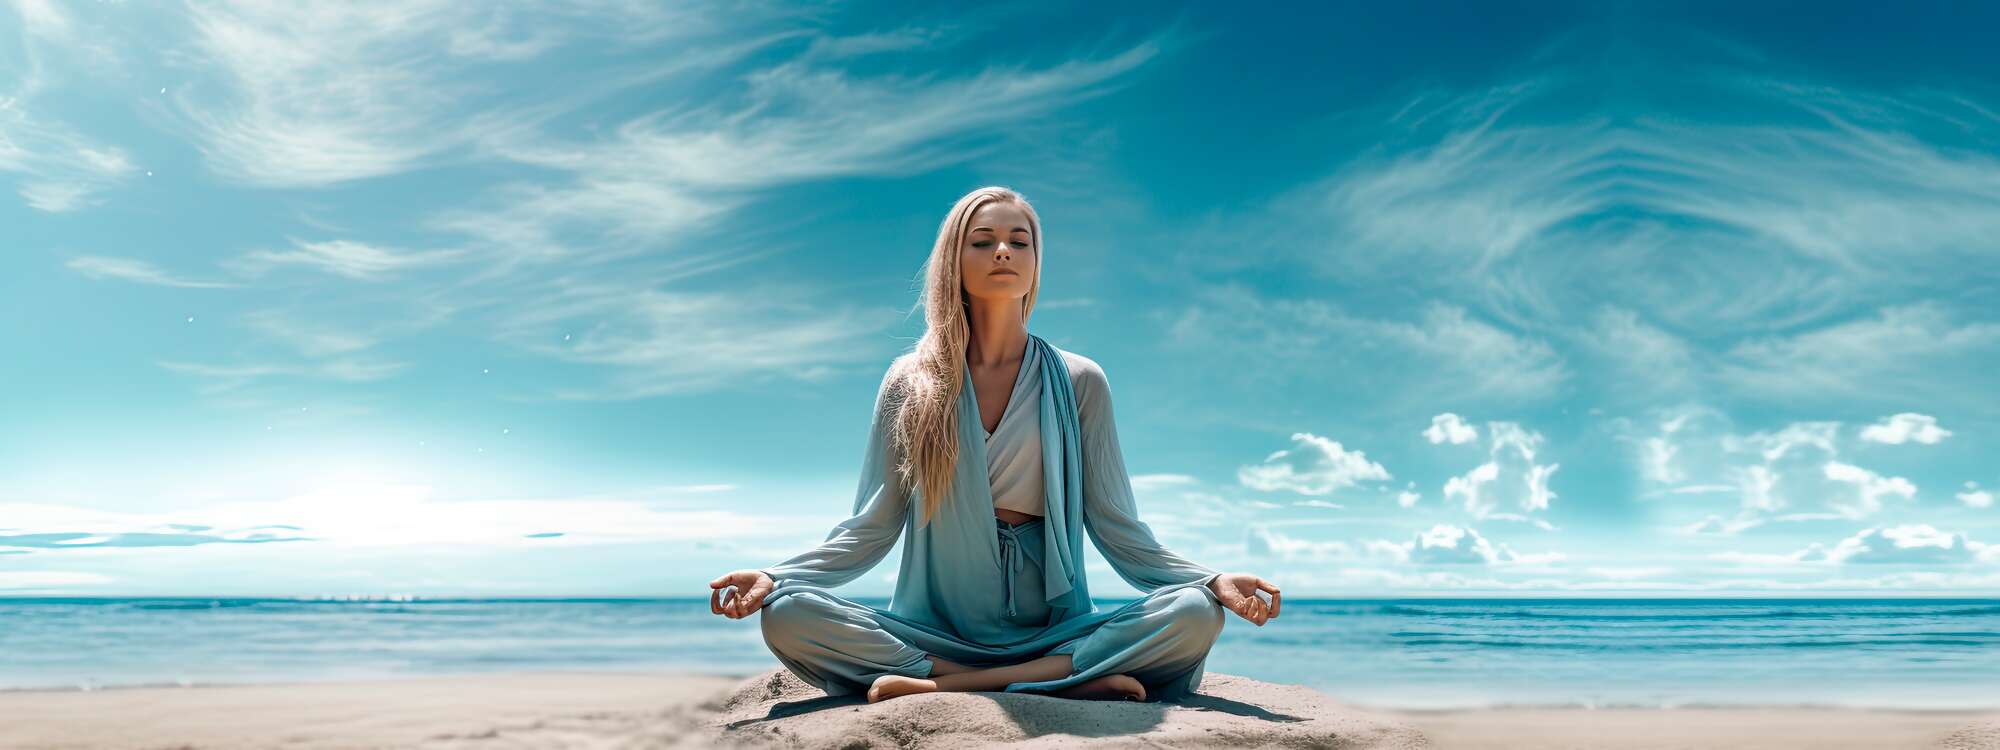 Yoga-Antistress - ob für ein Wochenende, einen Stadt Urlaub oder ein längeres Retreat - Yoga Anti Stress Resorts